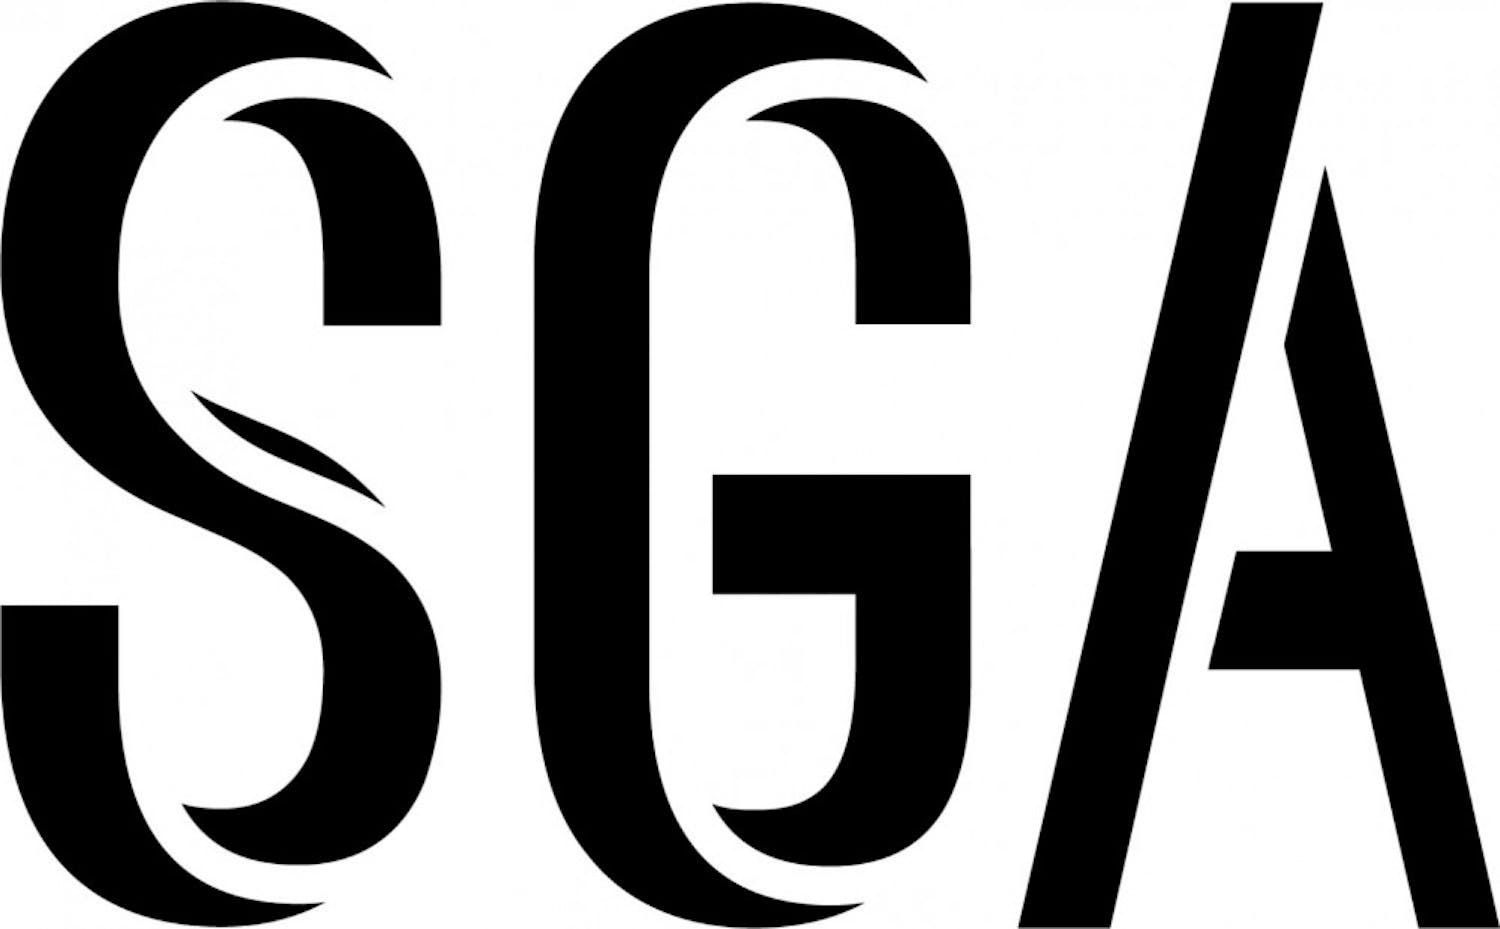 SGA-Logo